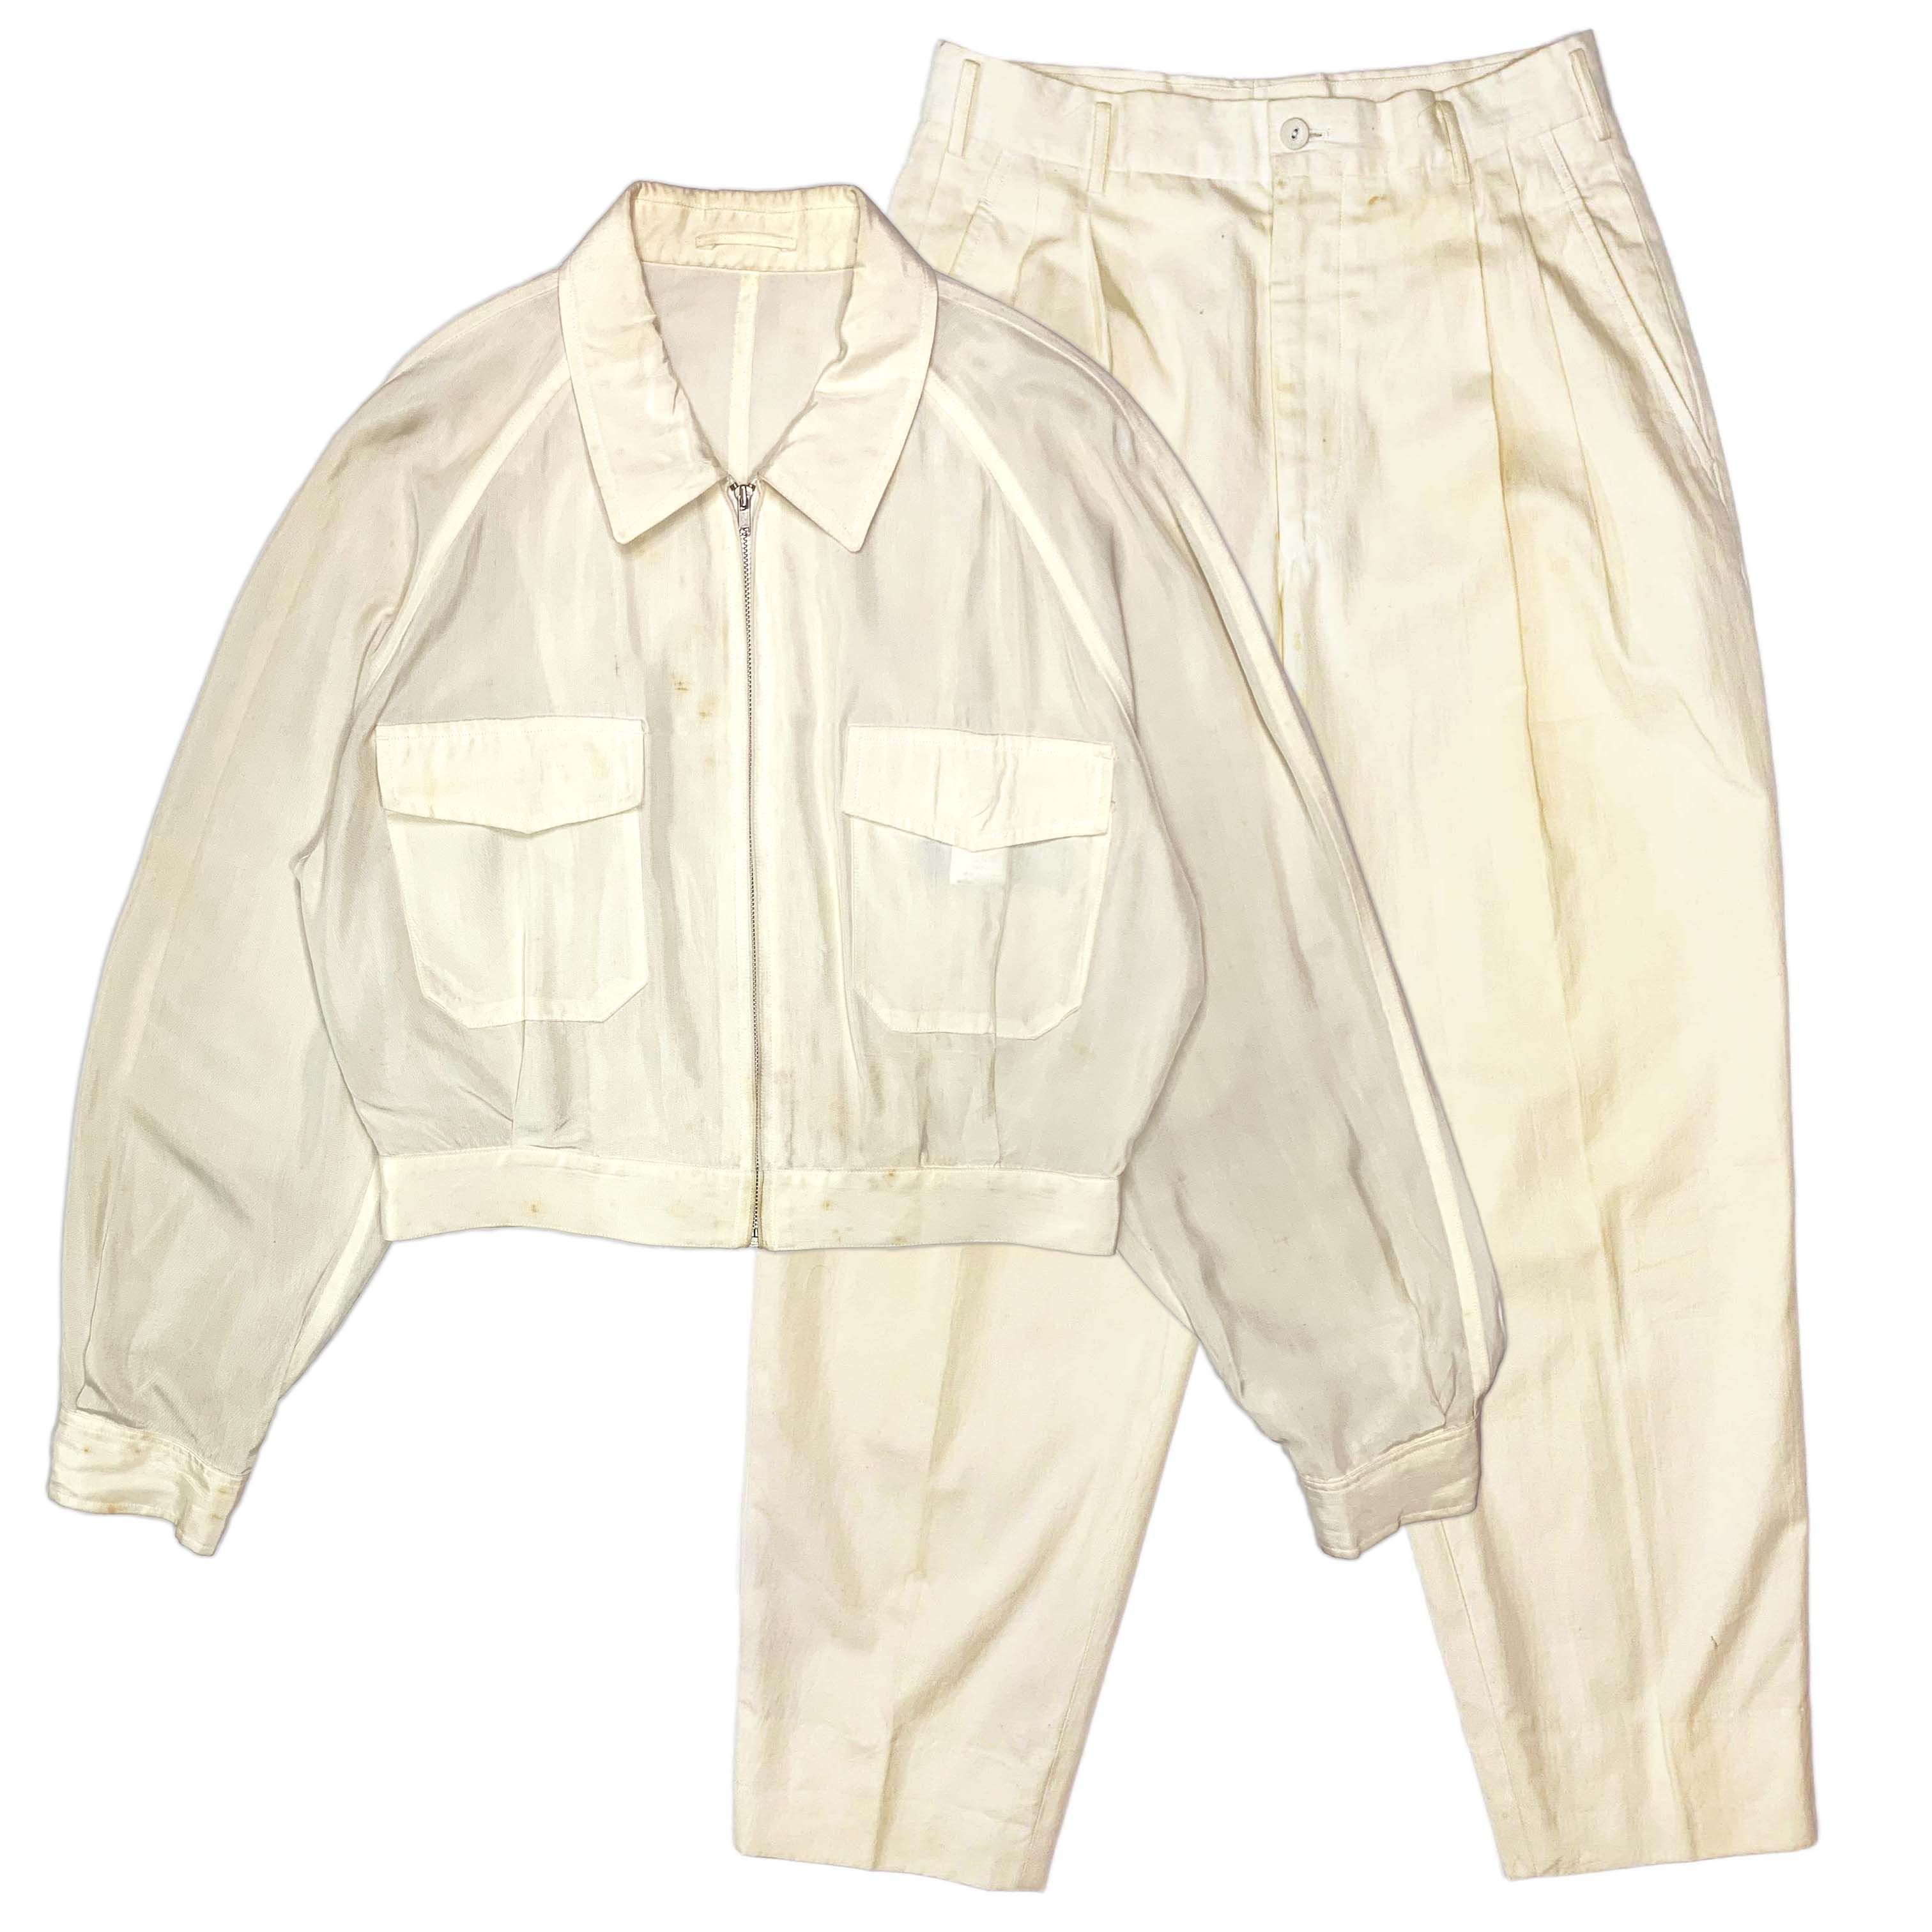 SS87 Short Acetate Jacket & Cotton Pants - 1